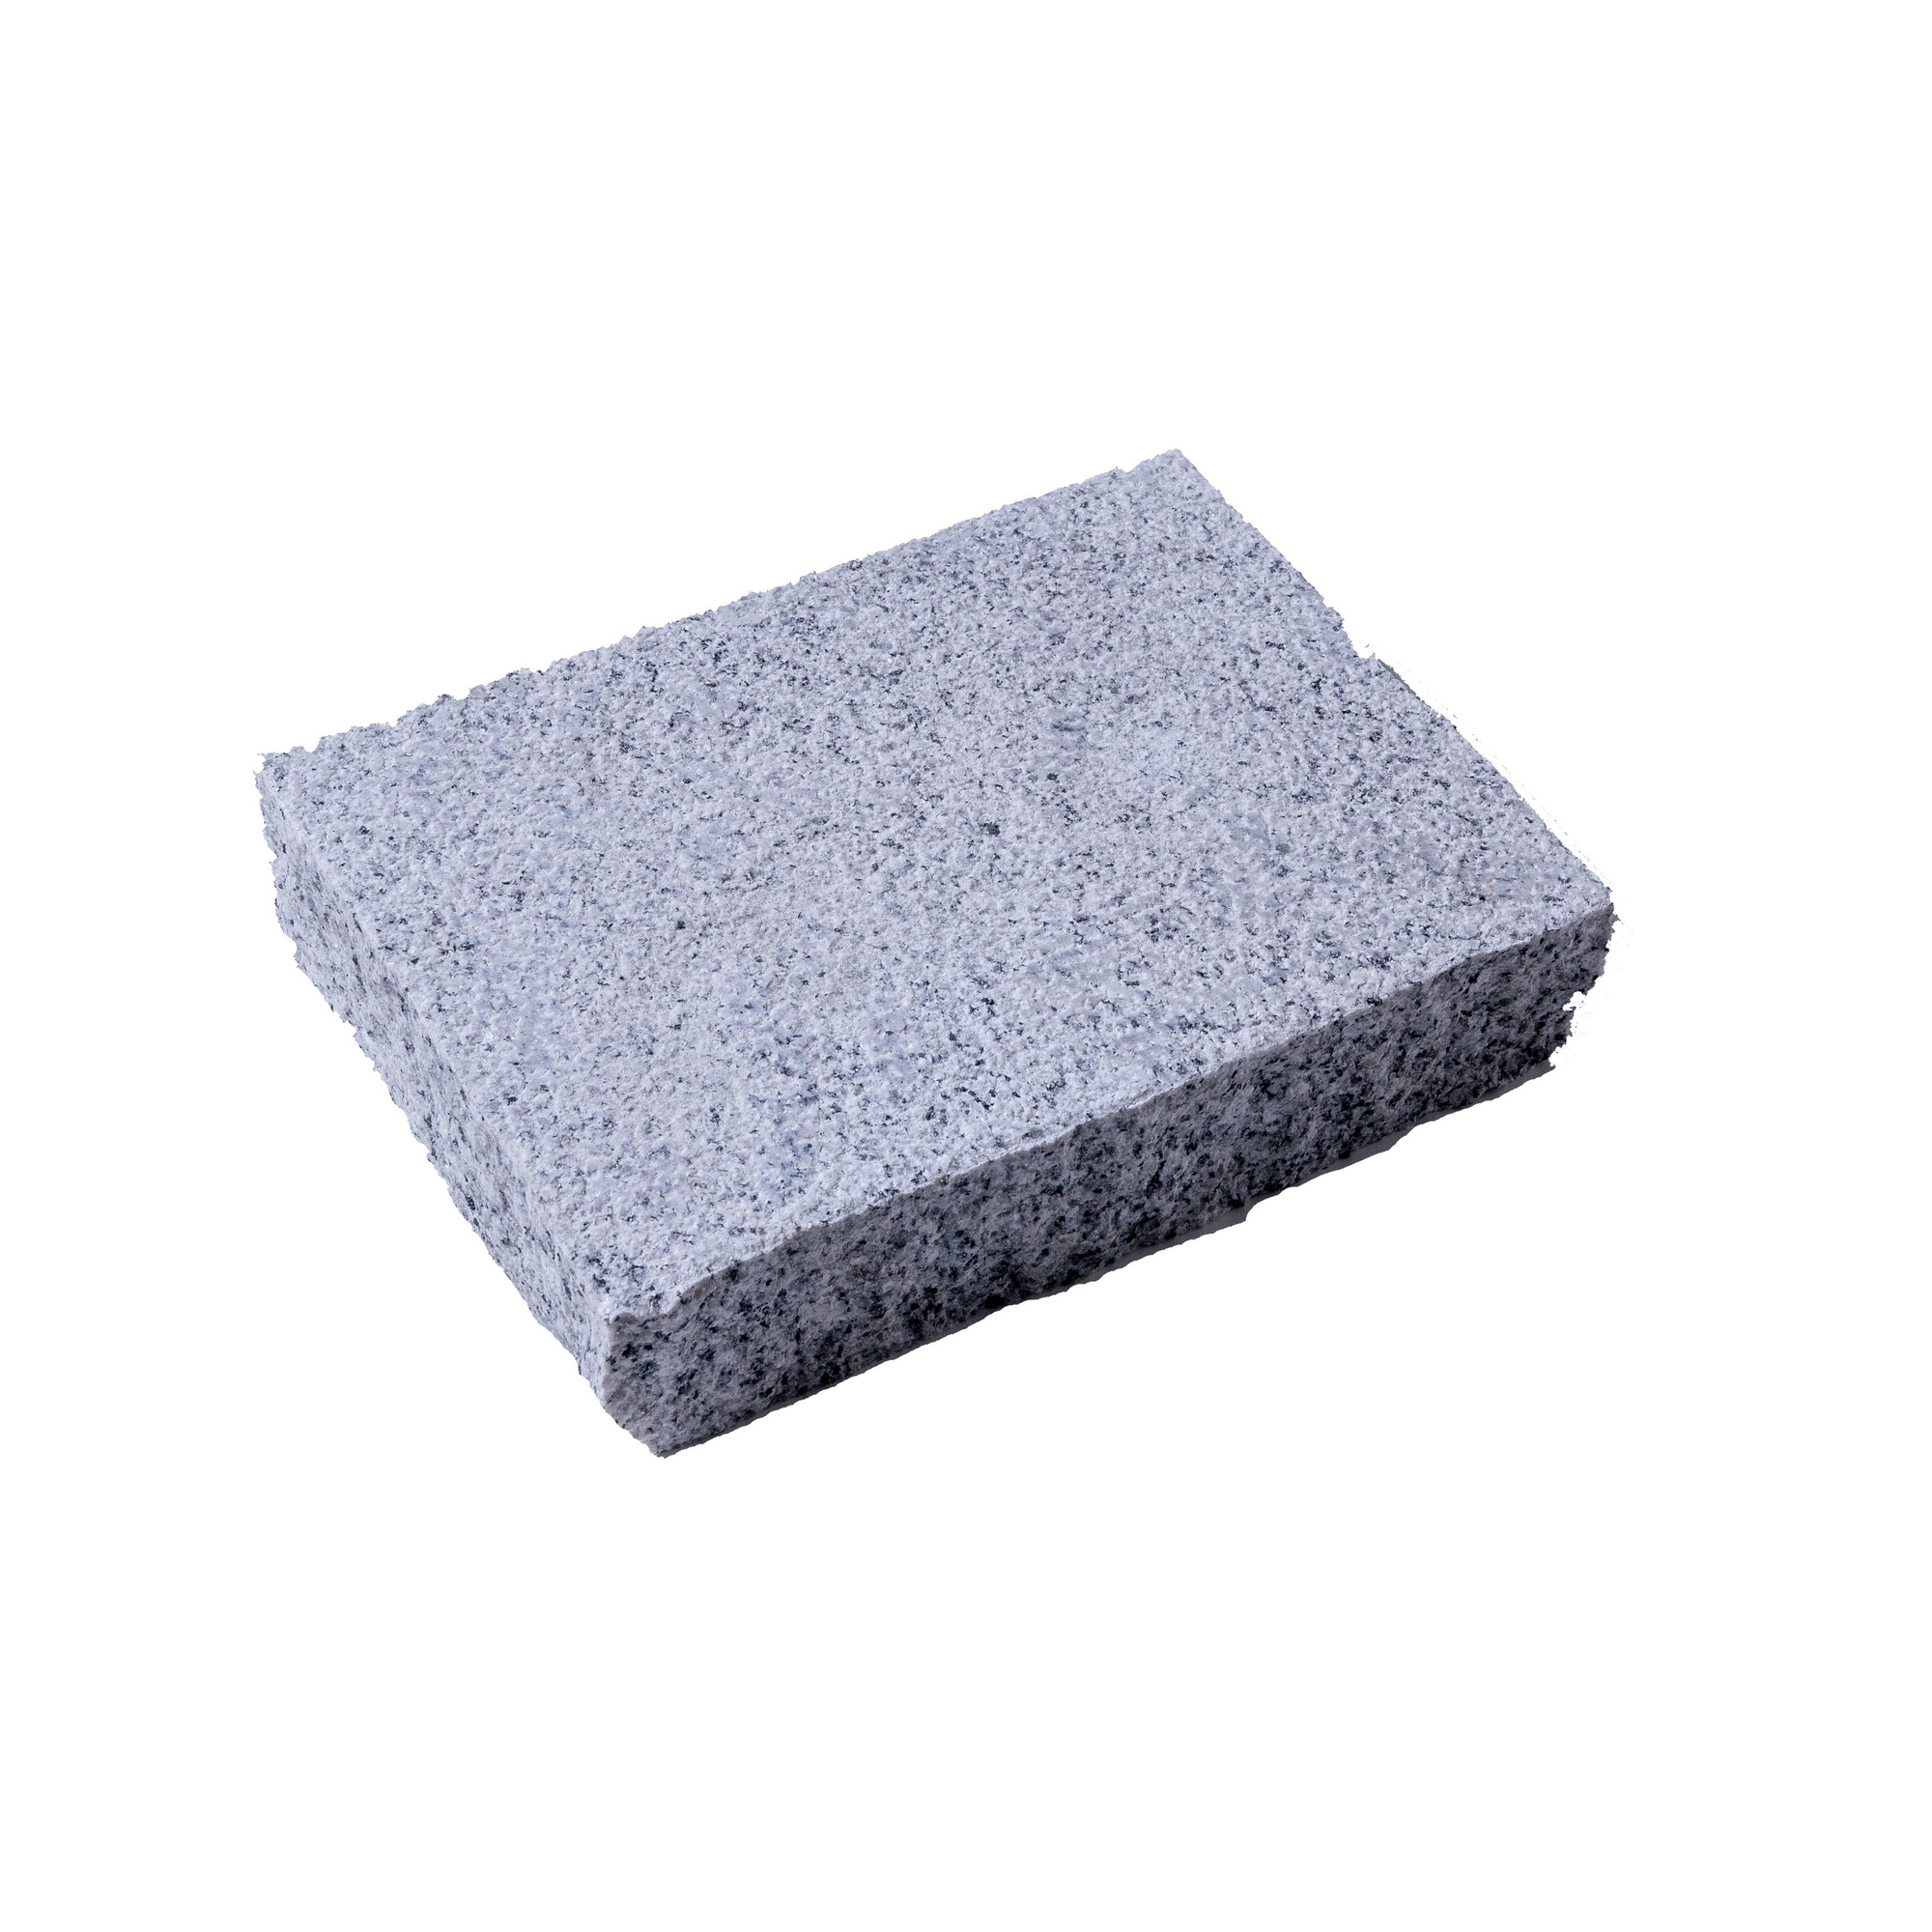 Pflasterstein 'Granit ' Naturstein grauweiß 24 x 18 x 5 cm + product picture